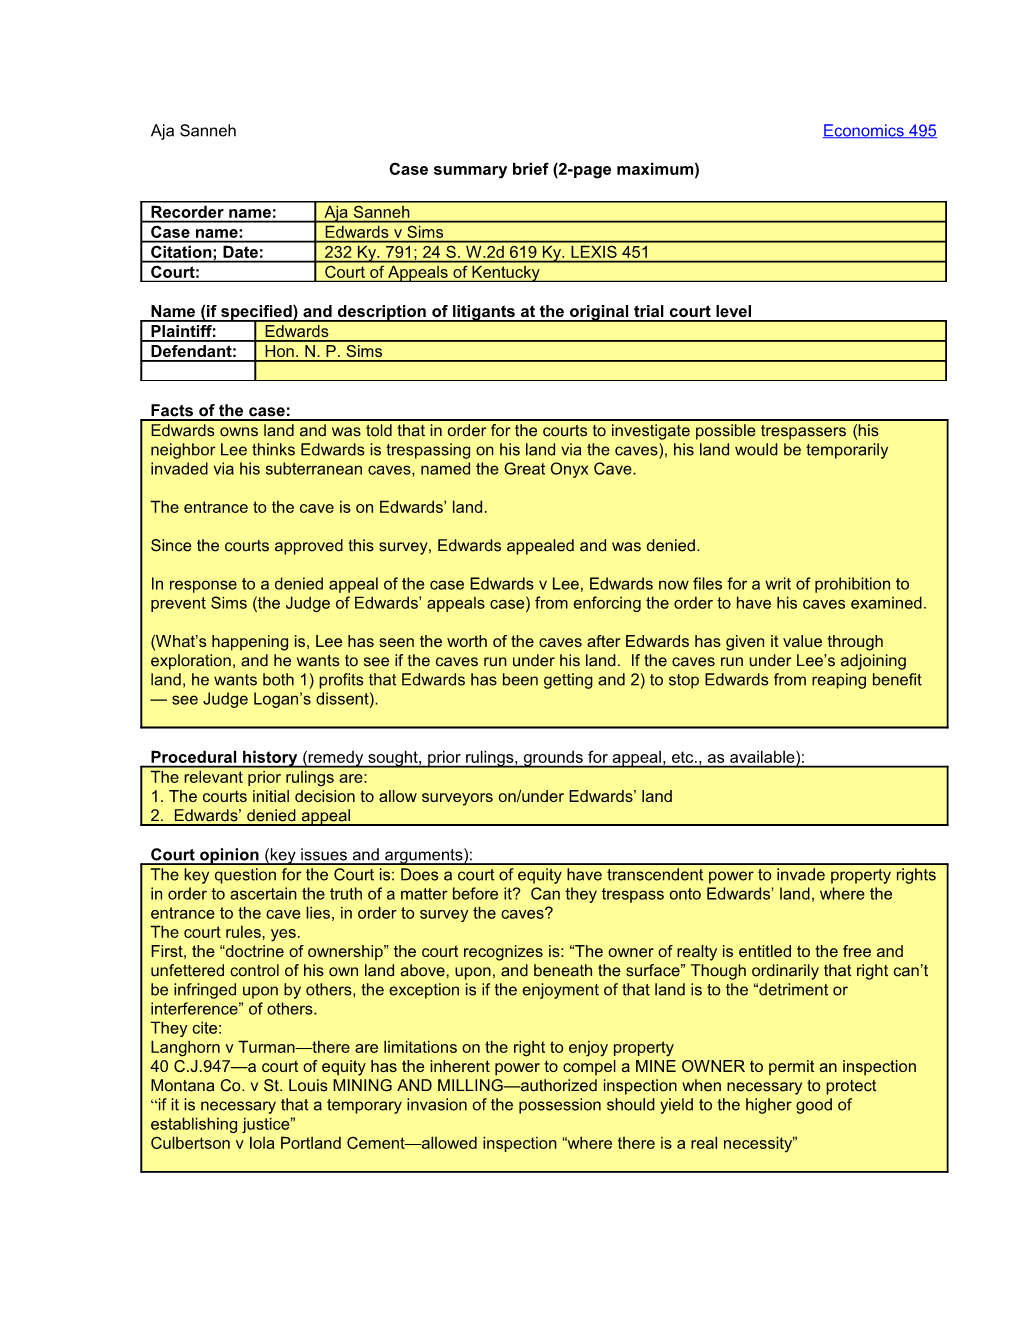 Case Summary Brief (2-Page Maximum) s1